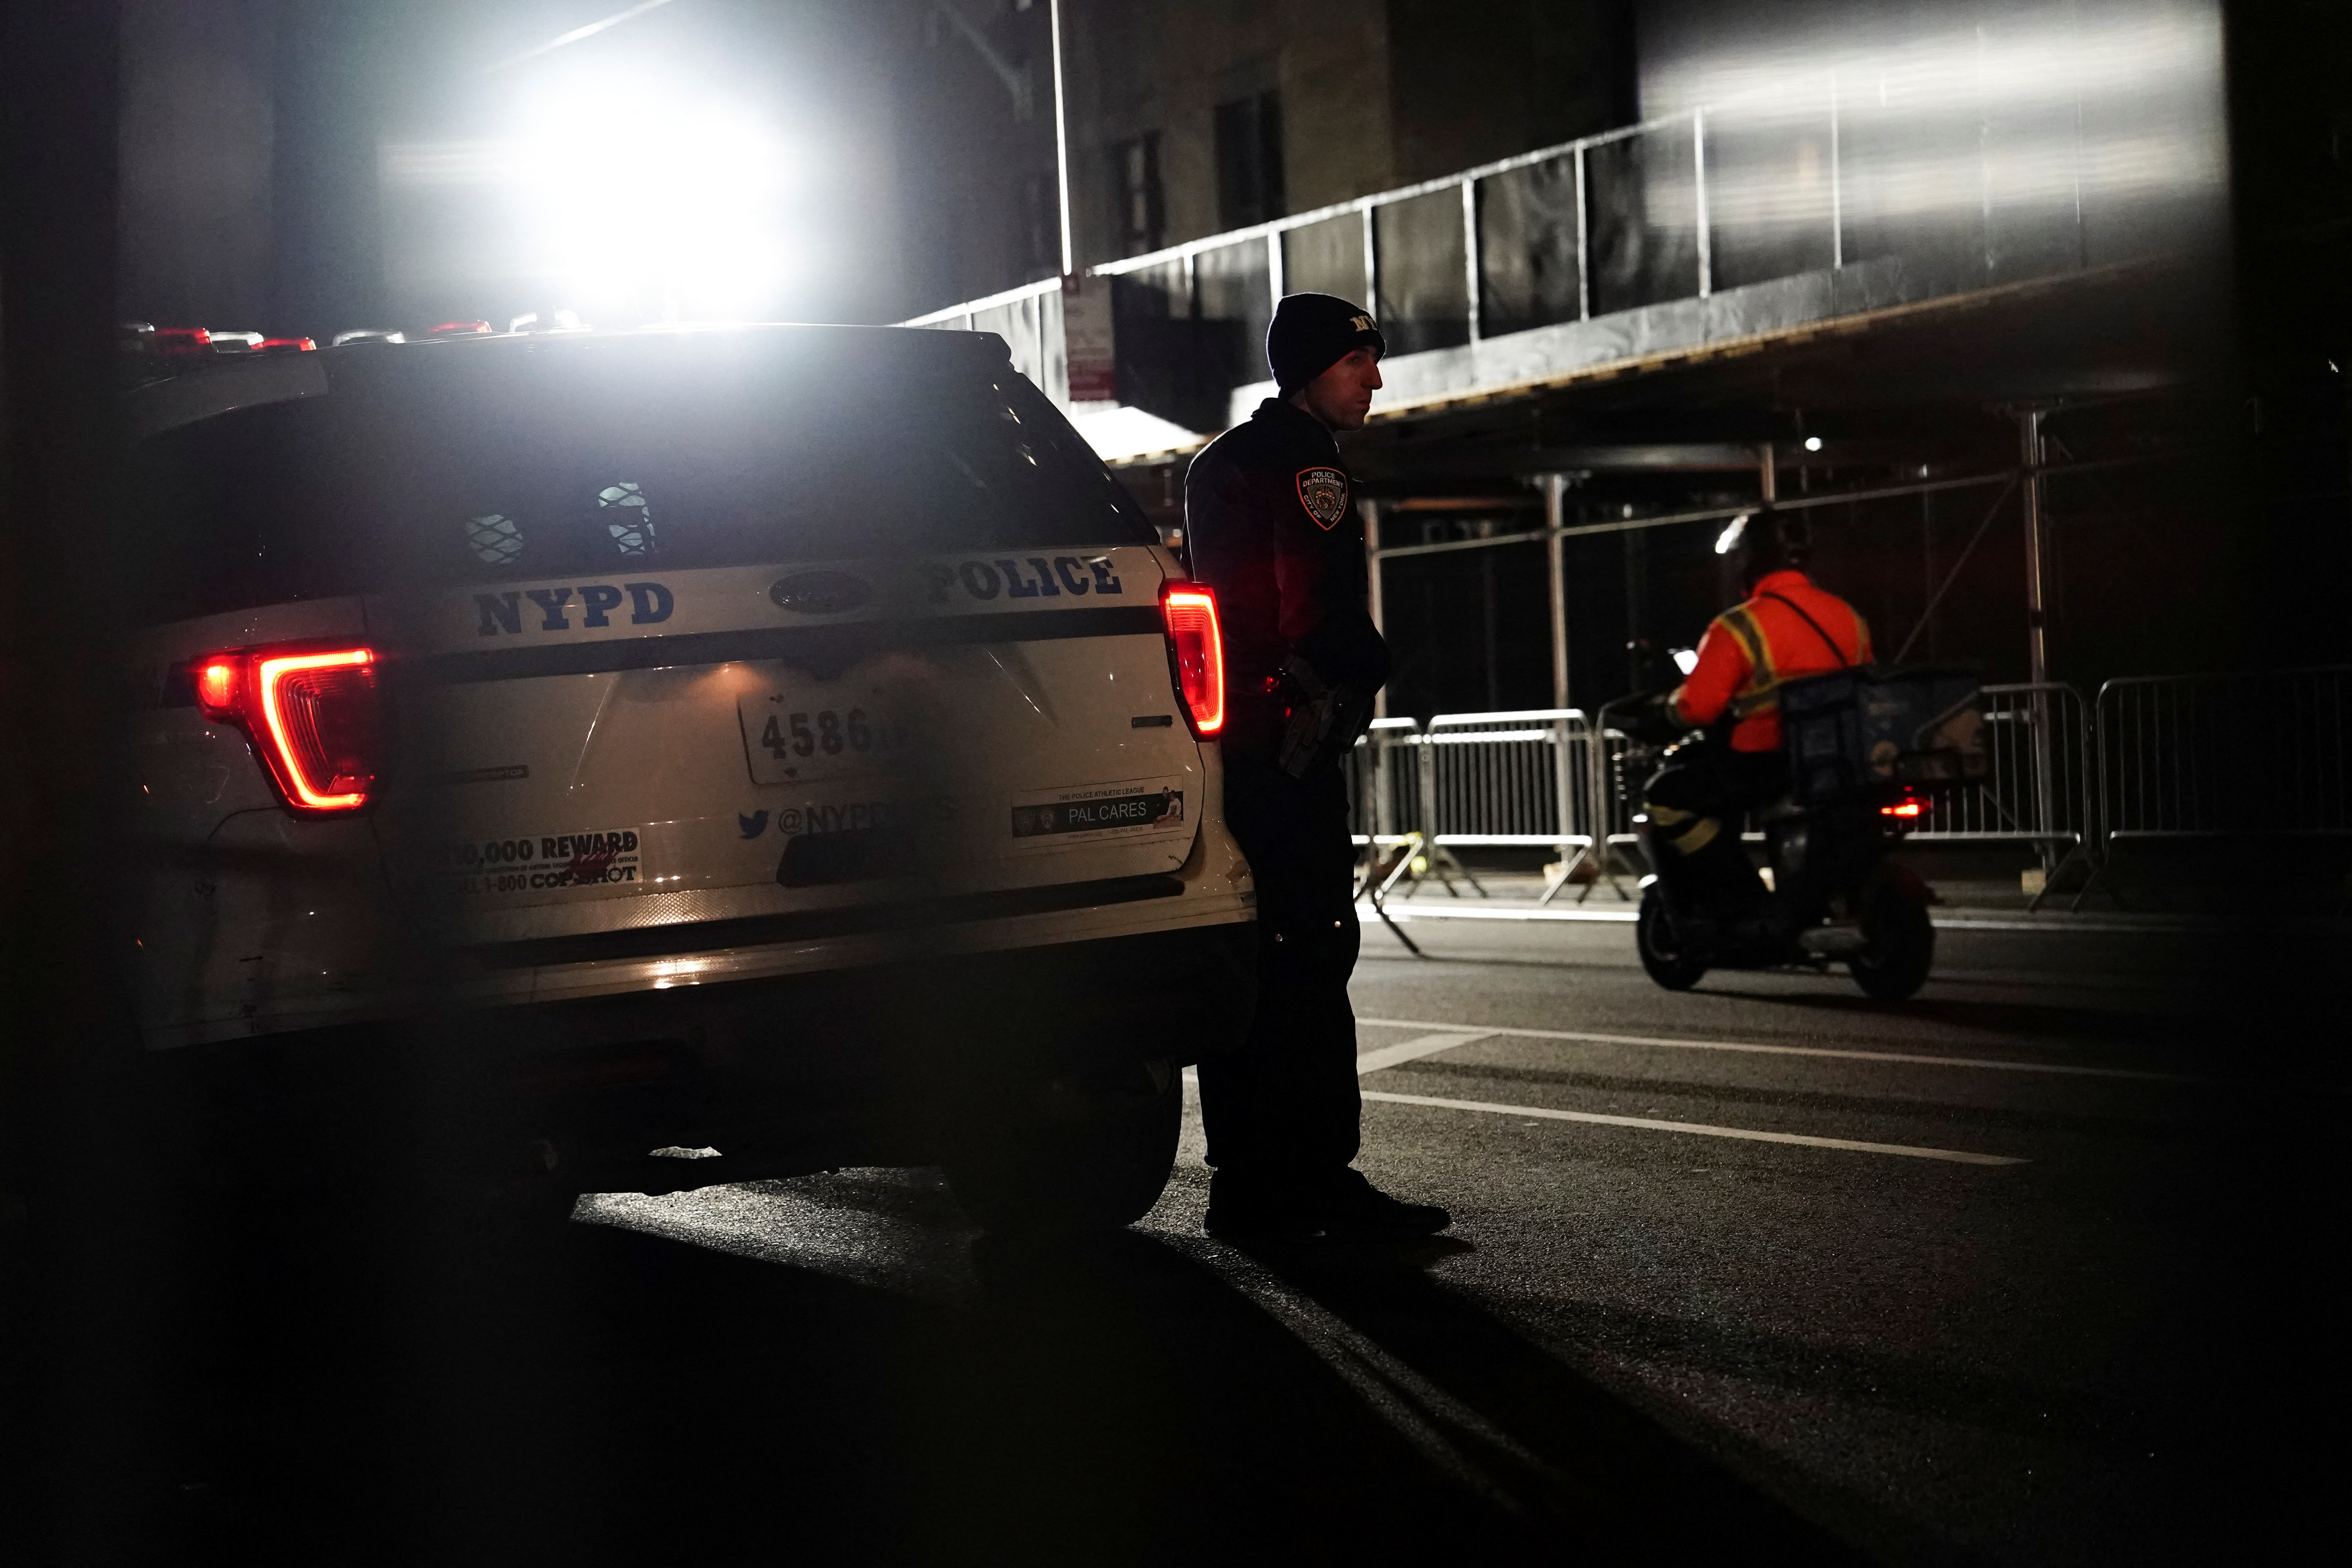 Los agendes de la Policía de Nueva York están preparados para responder. (REUTERS/Bing Guan)